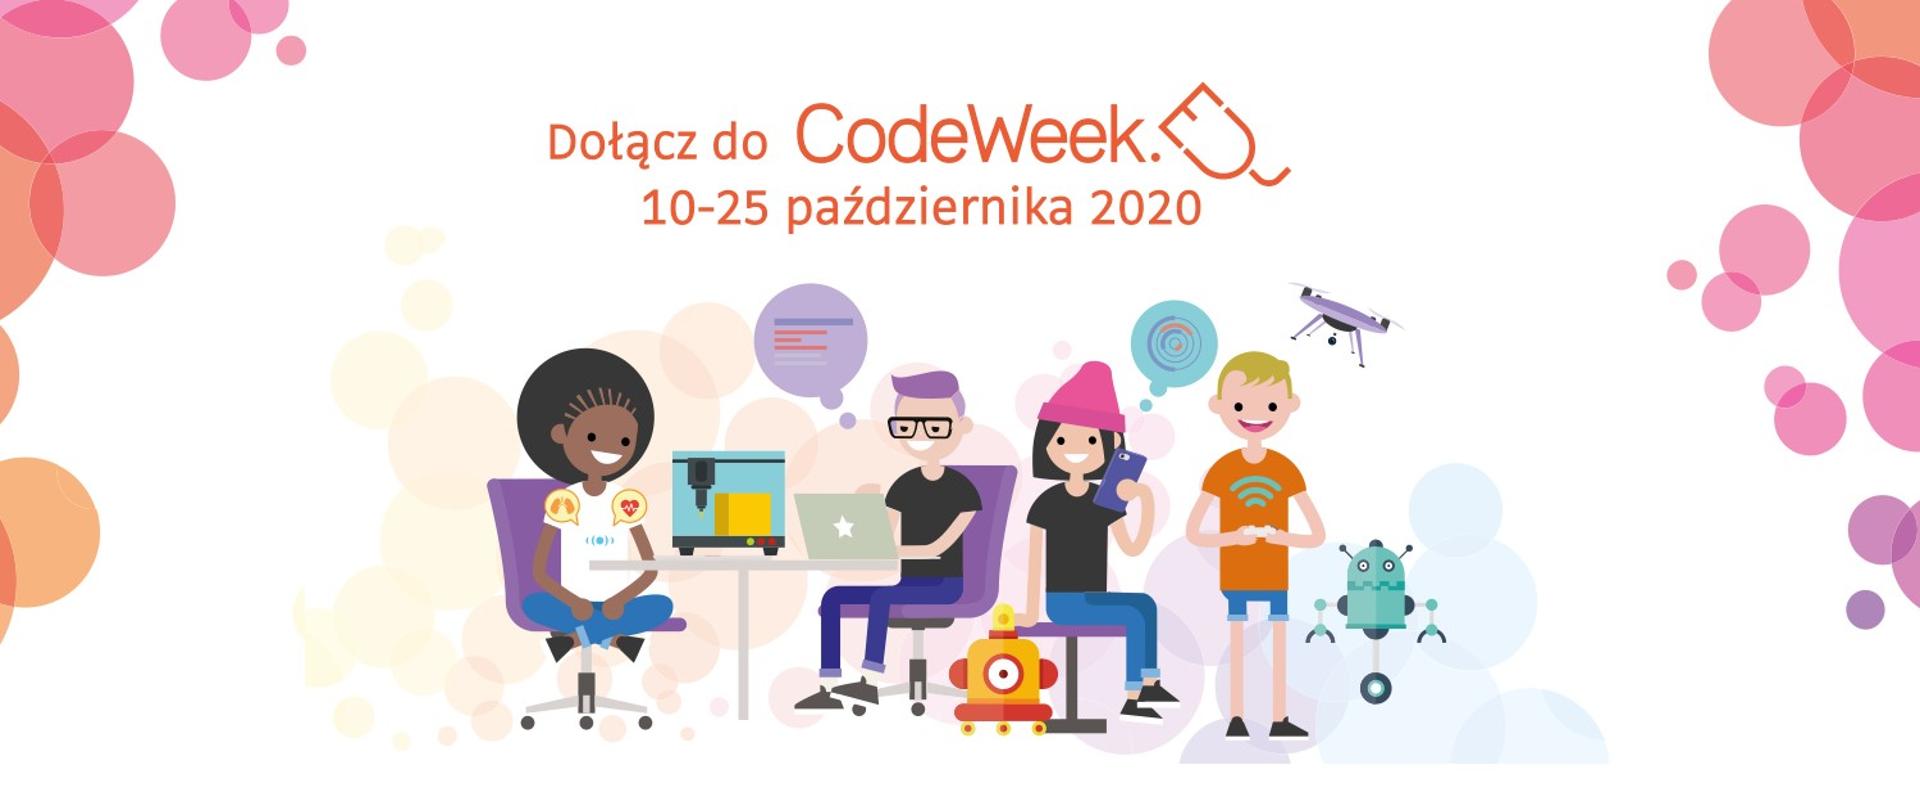 Napis "Dołącz do CodeWeek 10-25 października 2020", dzieci i młodzież programując roboty, drona.